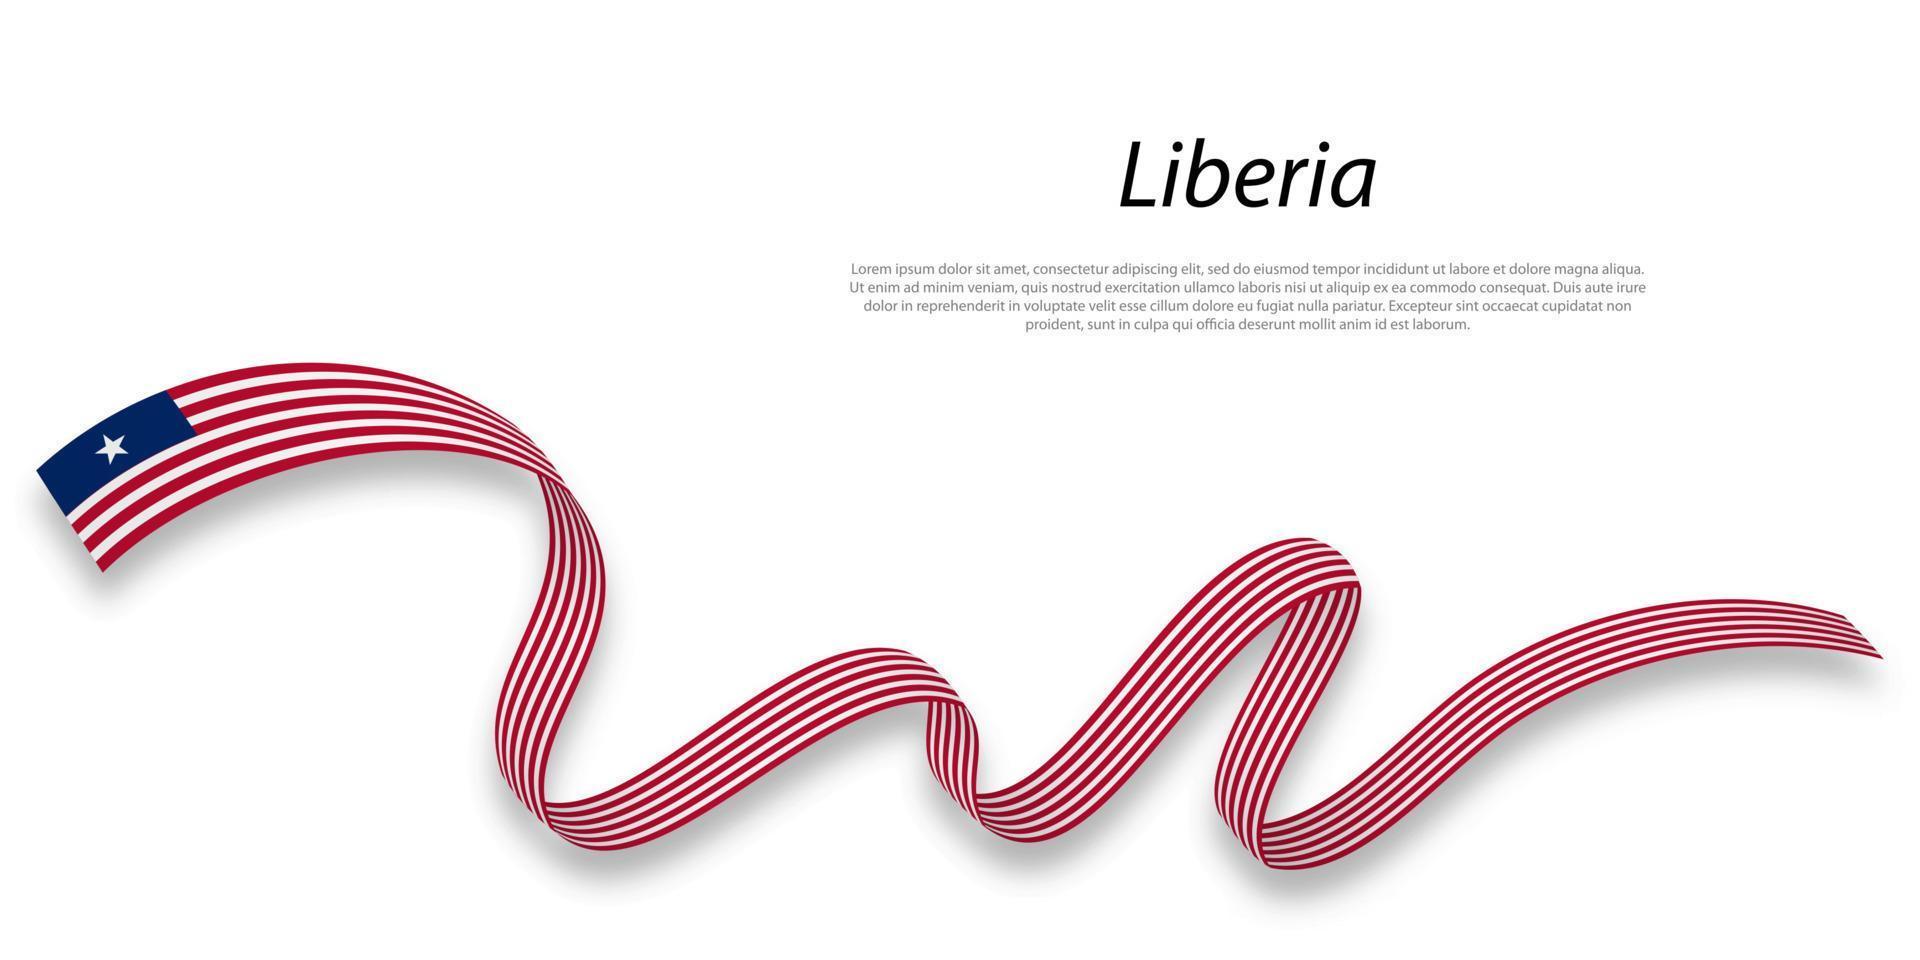 sventolando il nastro o lo striscione con la bandiera della Liberia. vettore